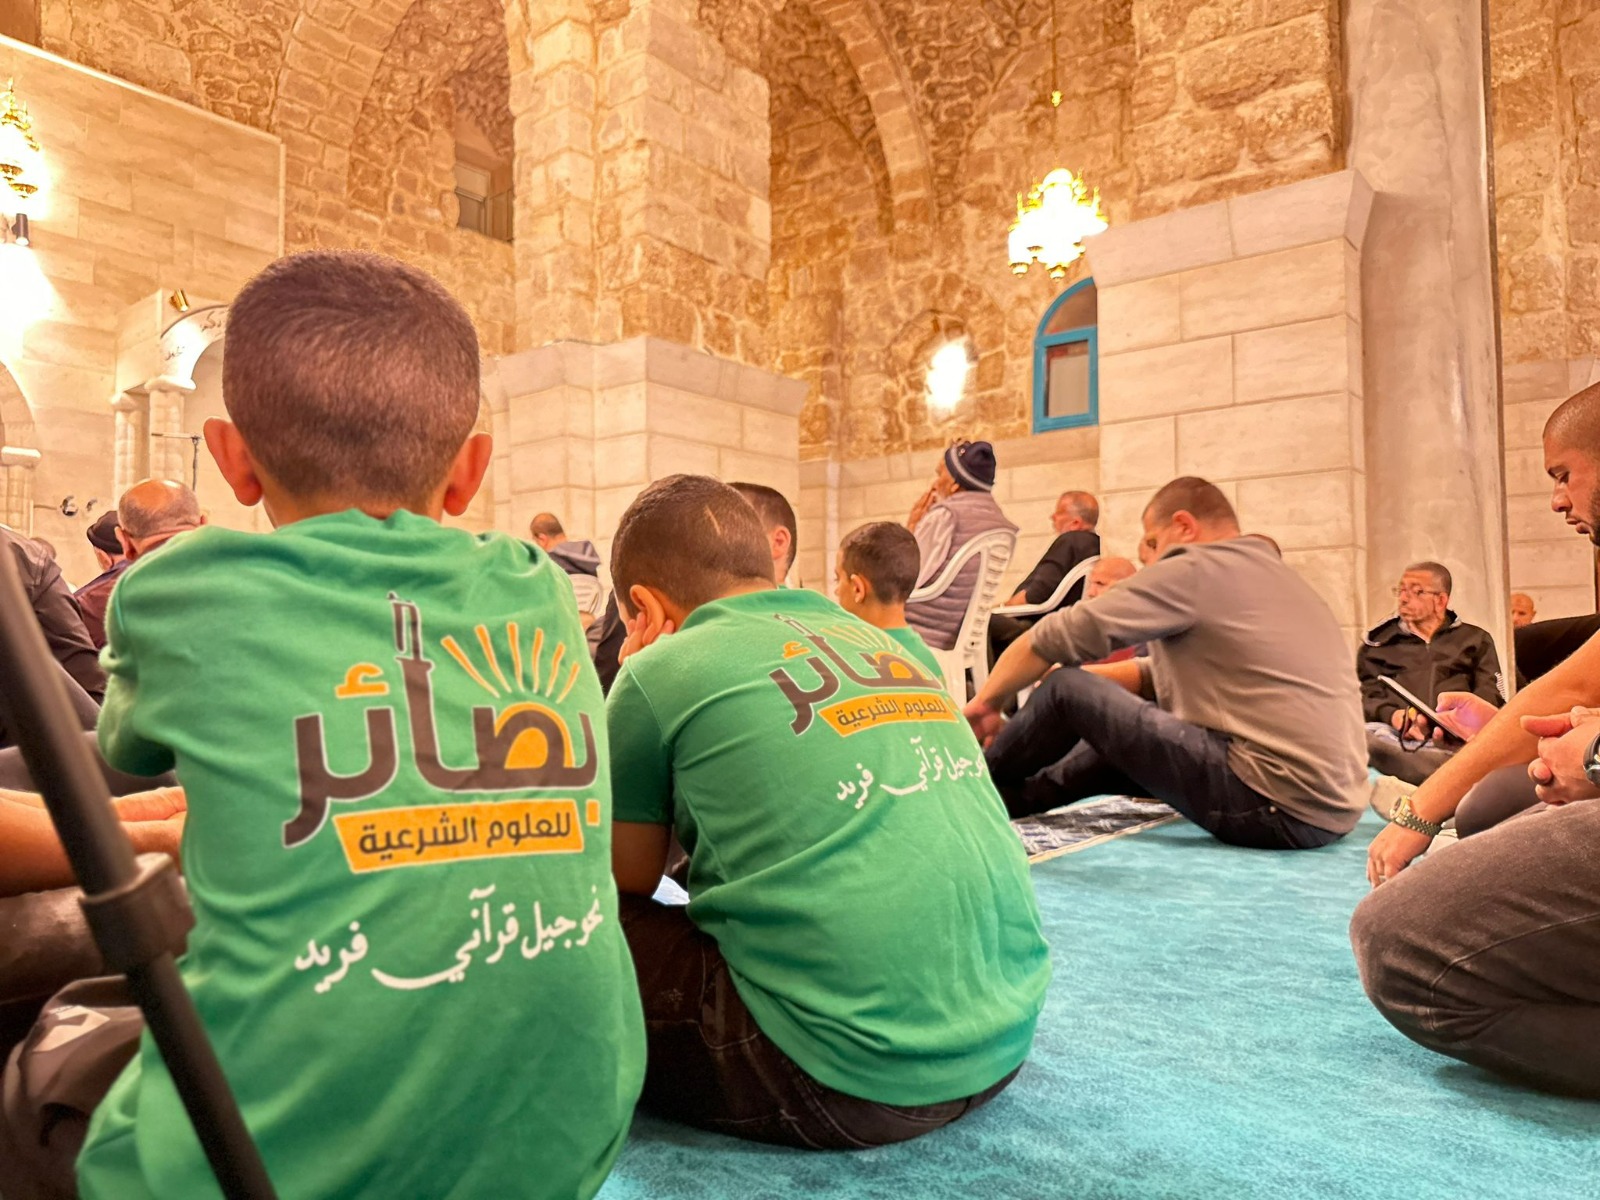 اللد:الإعلان عن انتهاء مشروع ترميم مسجد العمري وسط حضور المئات،صور وفيديو